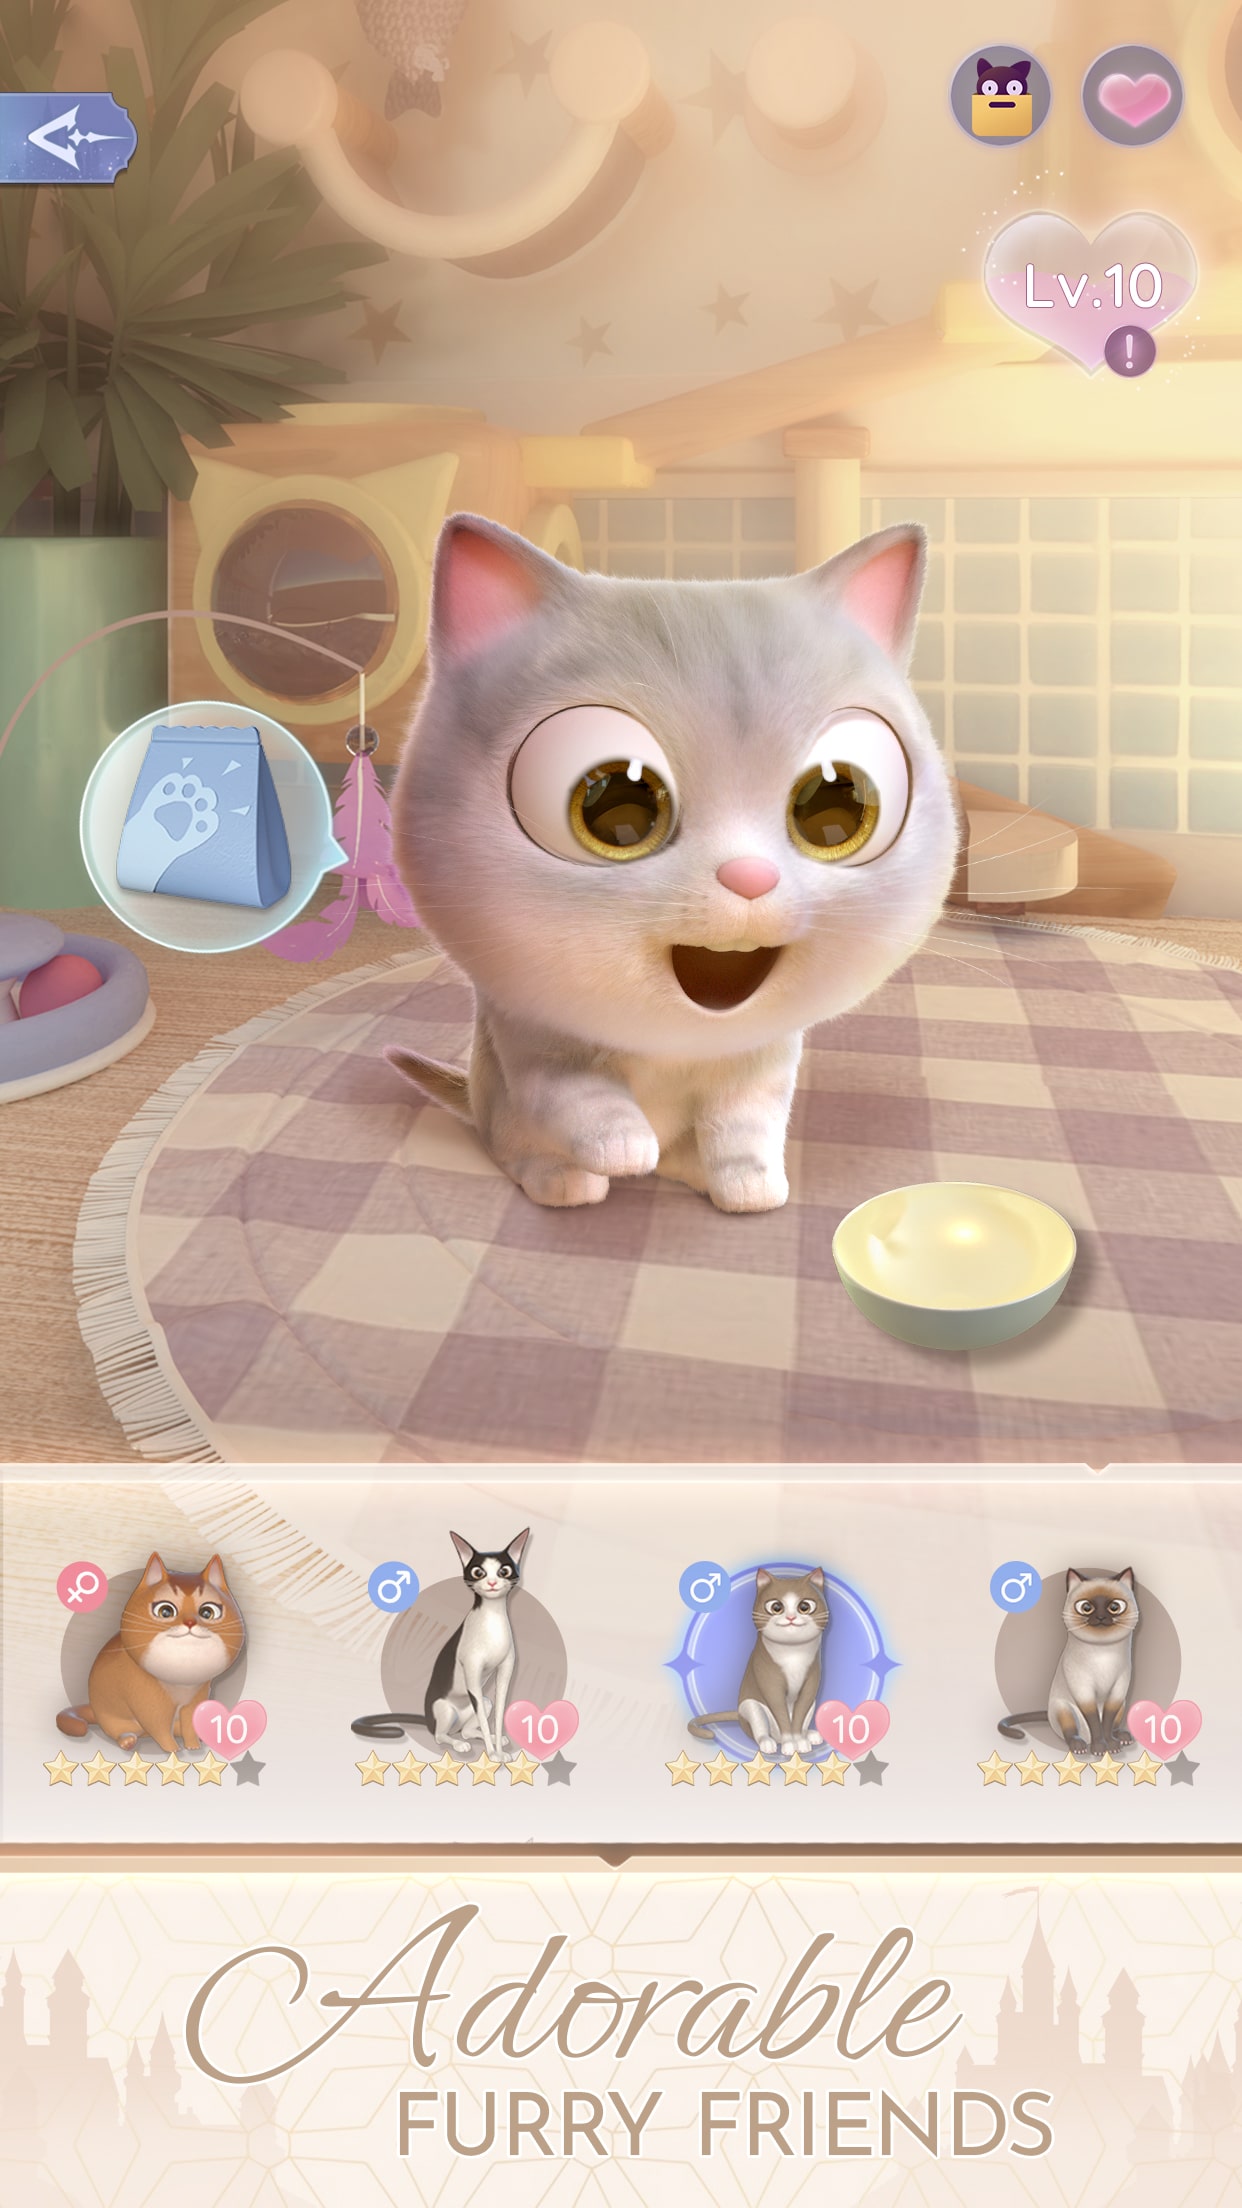 Princess Cat Lea Run - Microsoft Apps